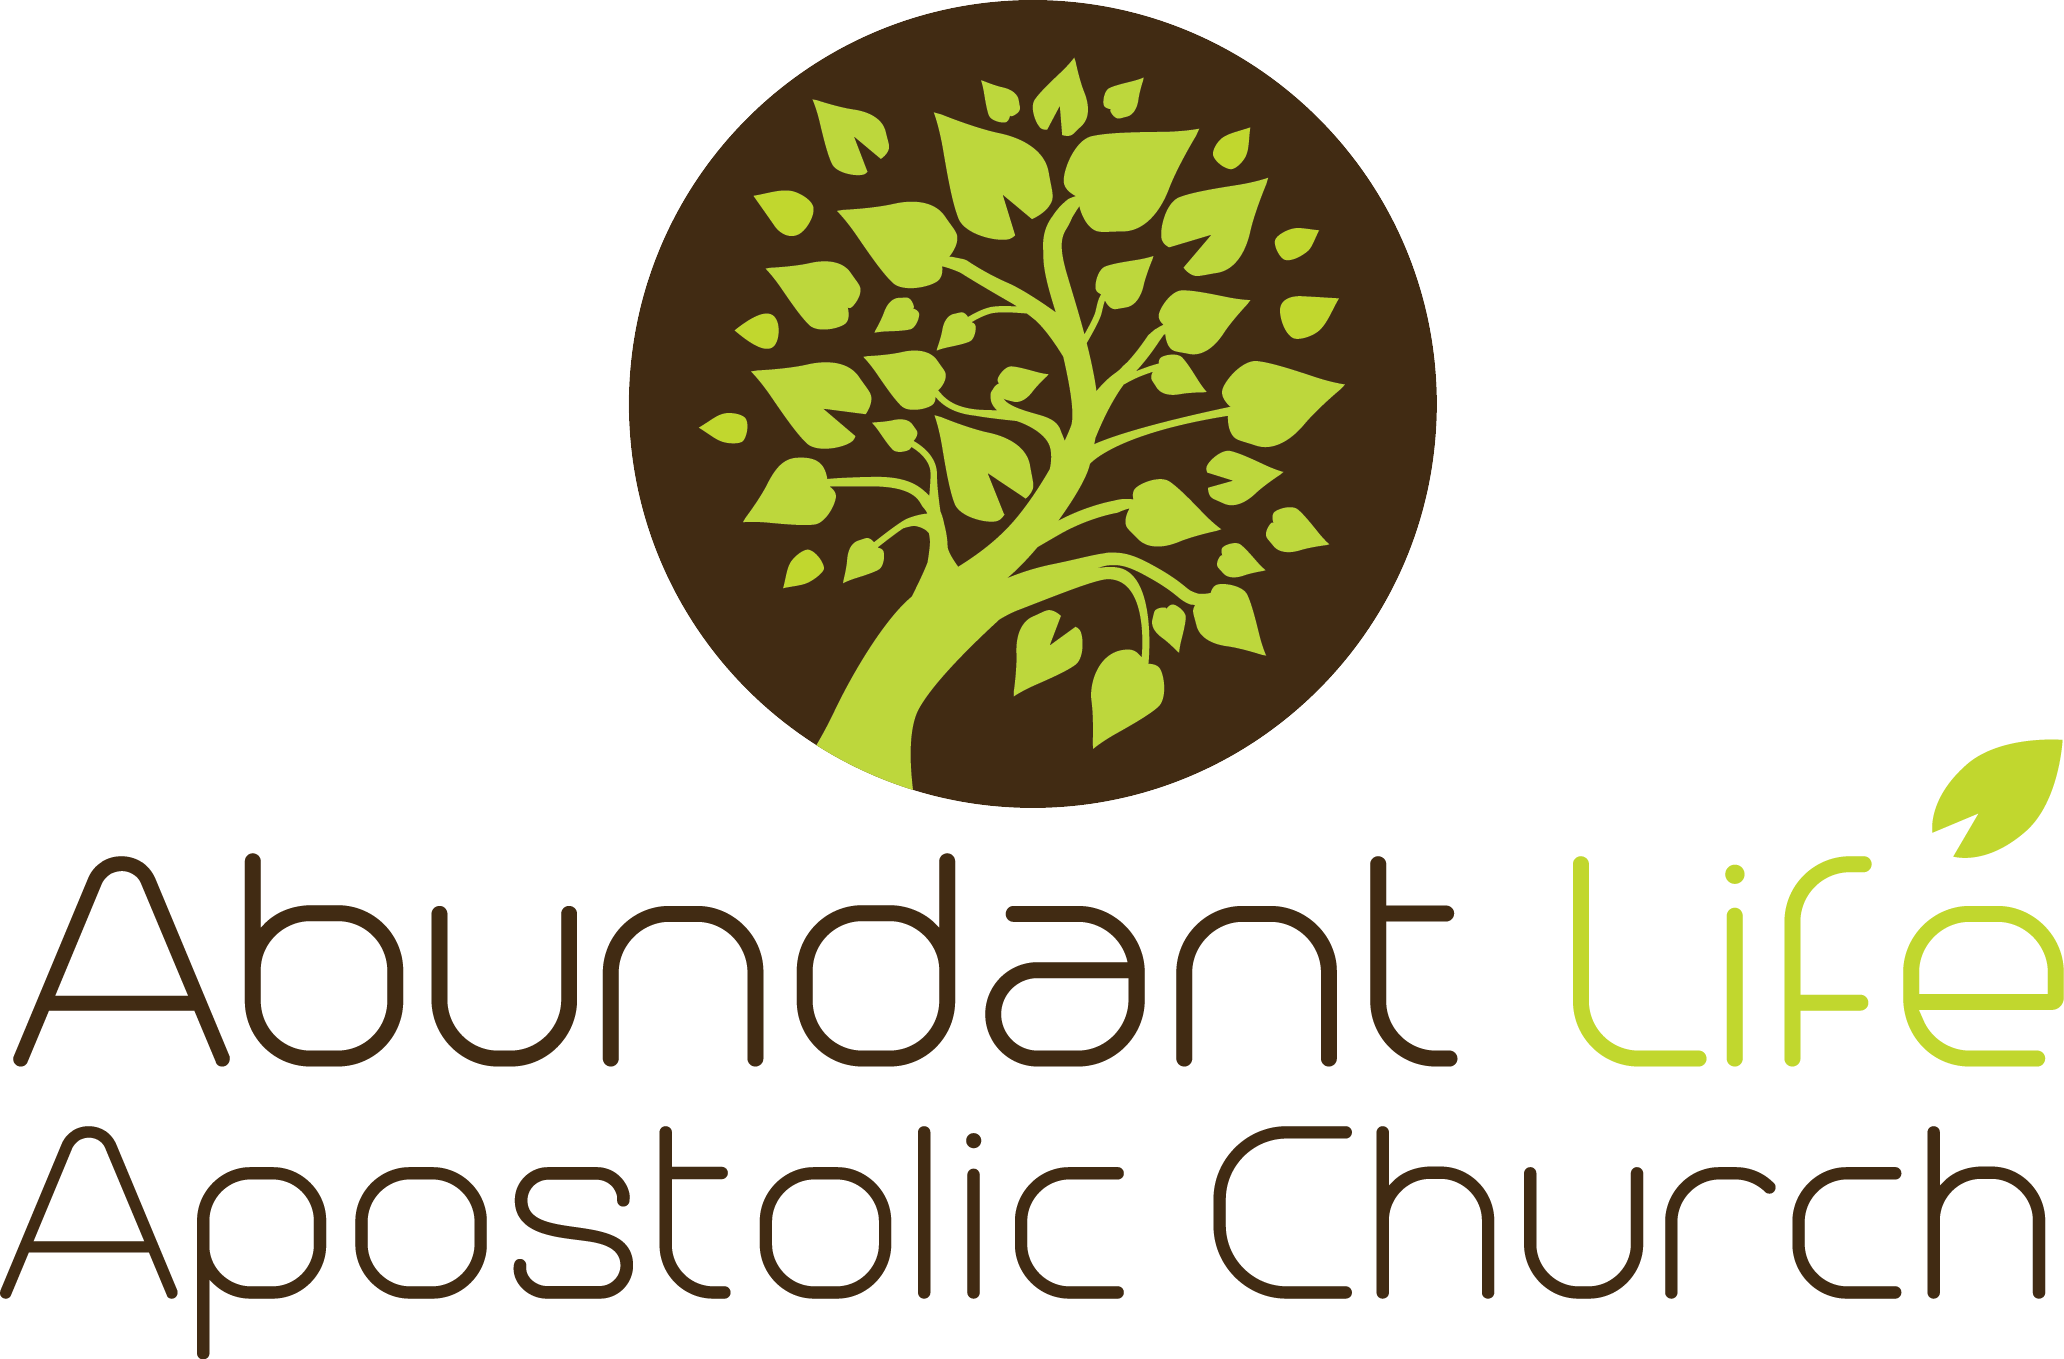 Abundant Life Apostolic Church